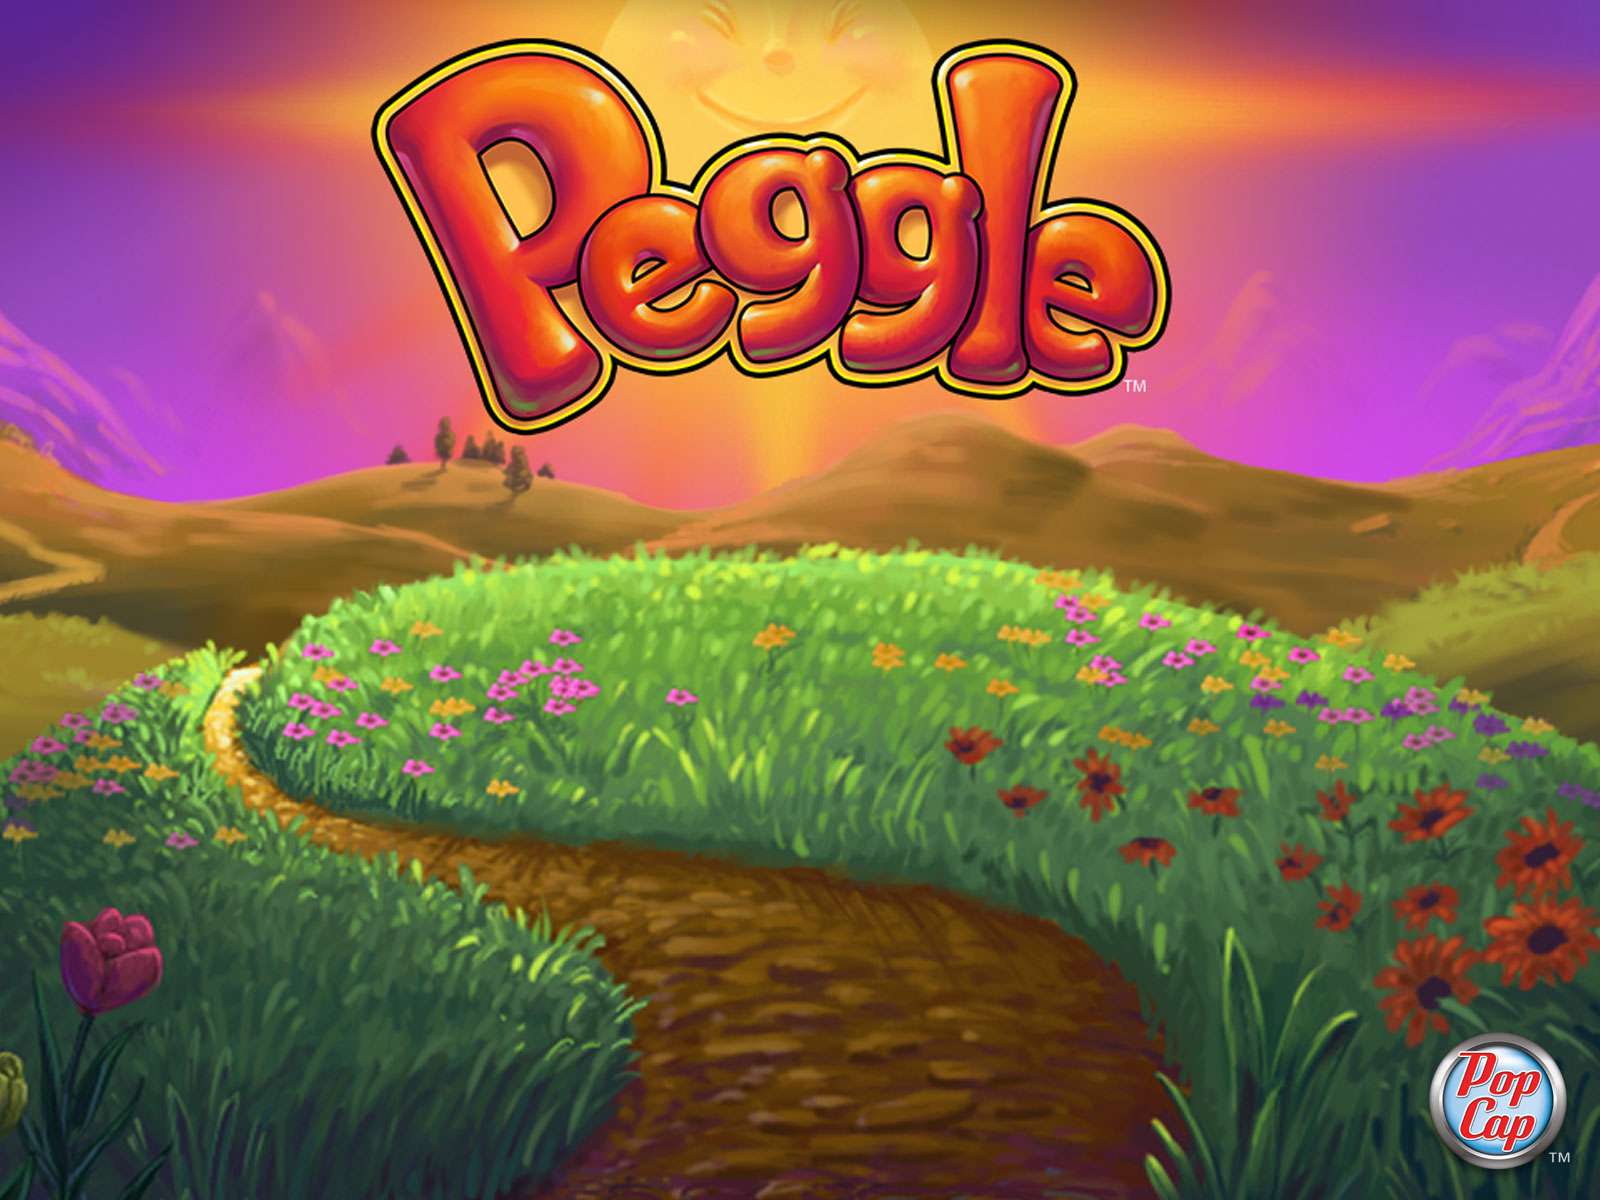 Παιχνίδι Peggle από την Popcap Games